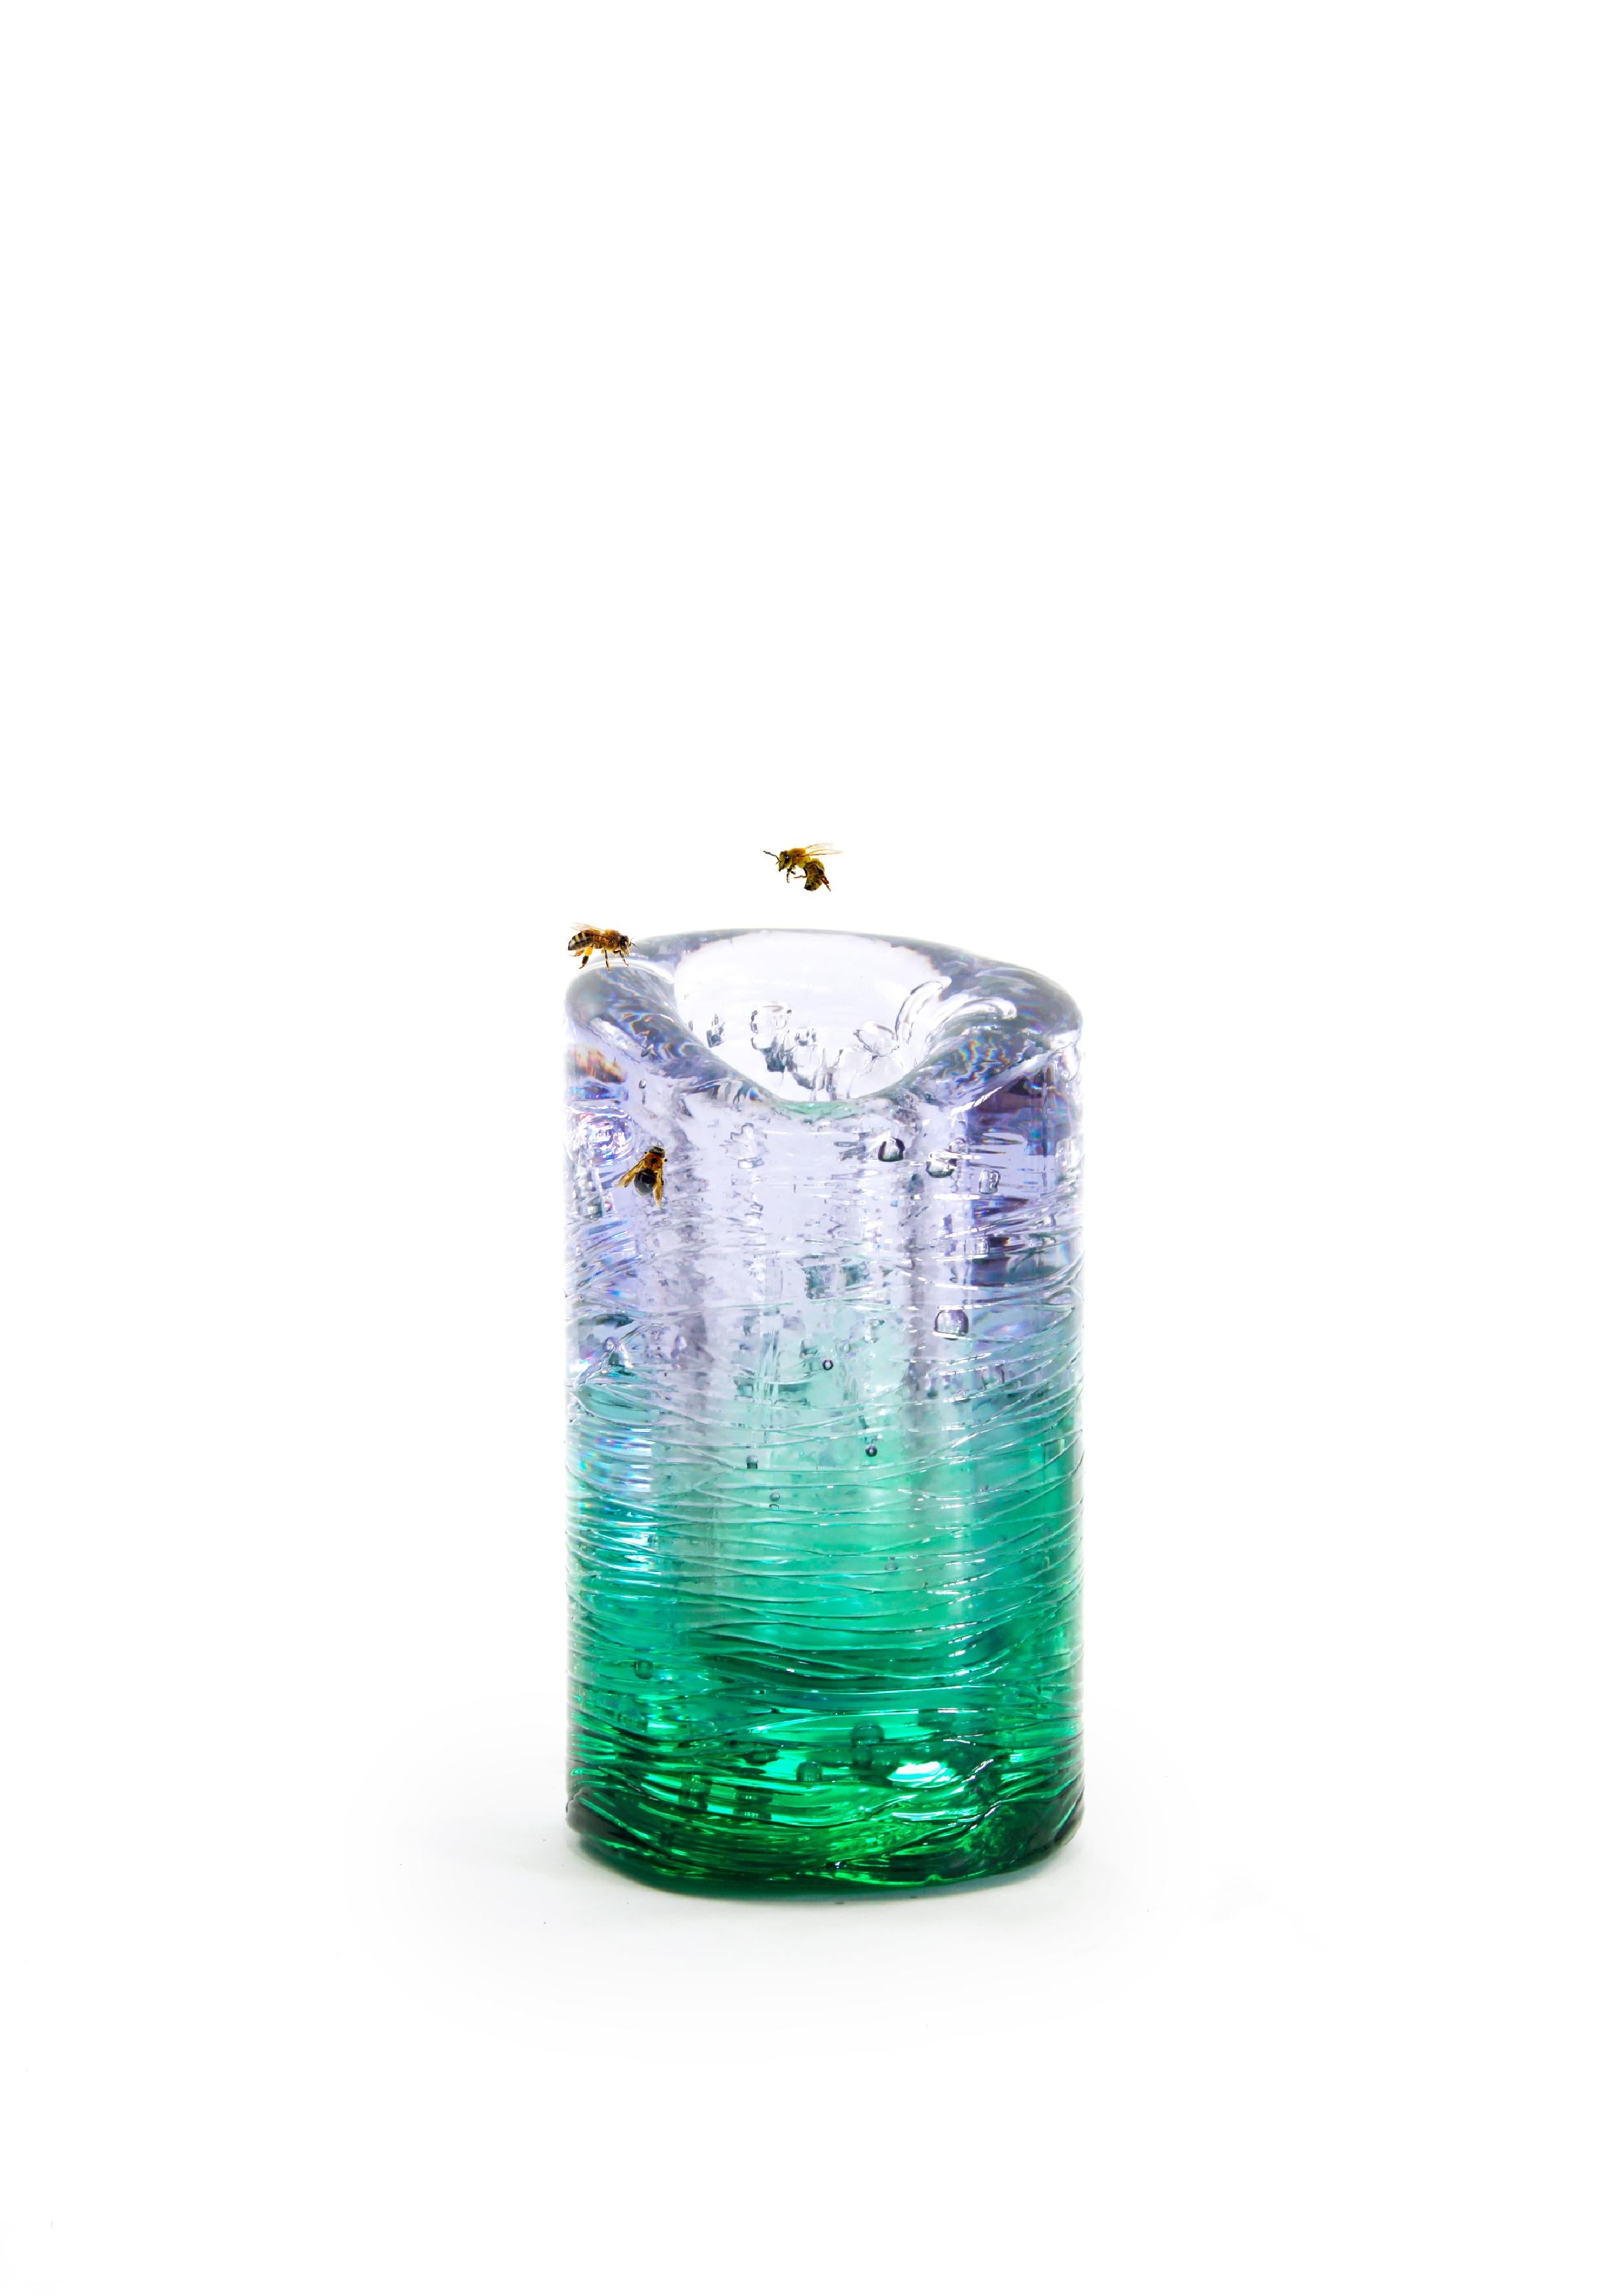 Jungle Contemporary Vase, Small Version in Monochrome Blue by Jacopo Foggini For Sale 1